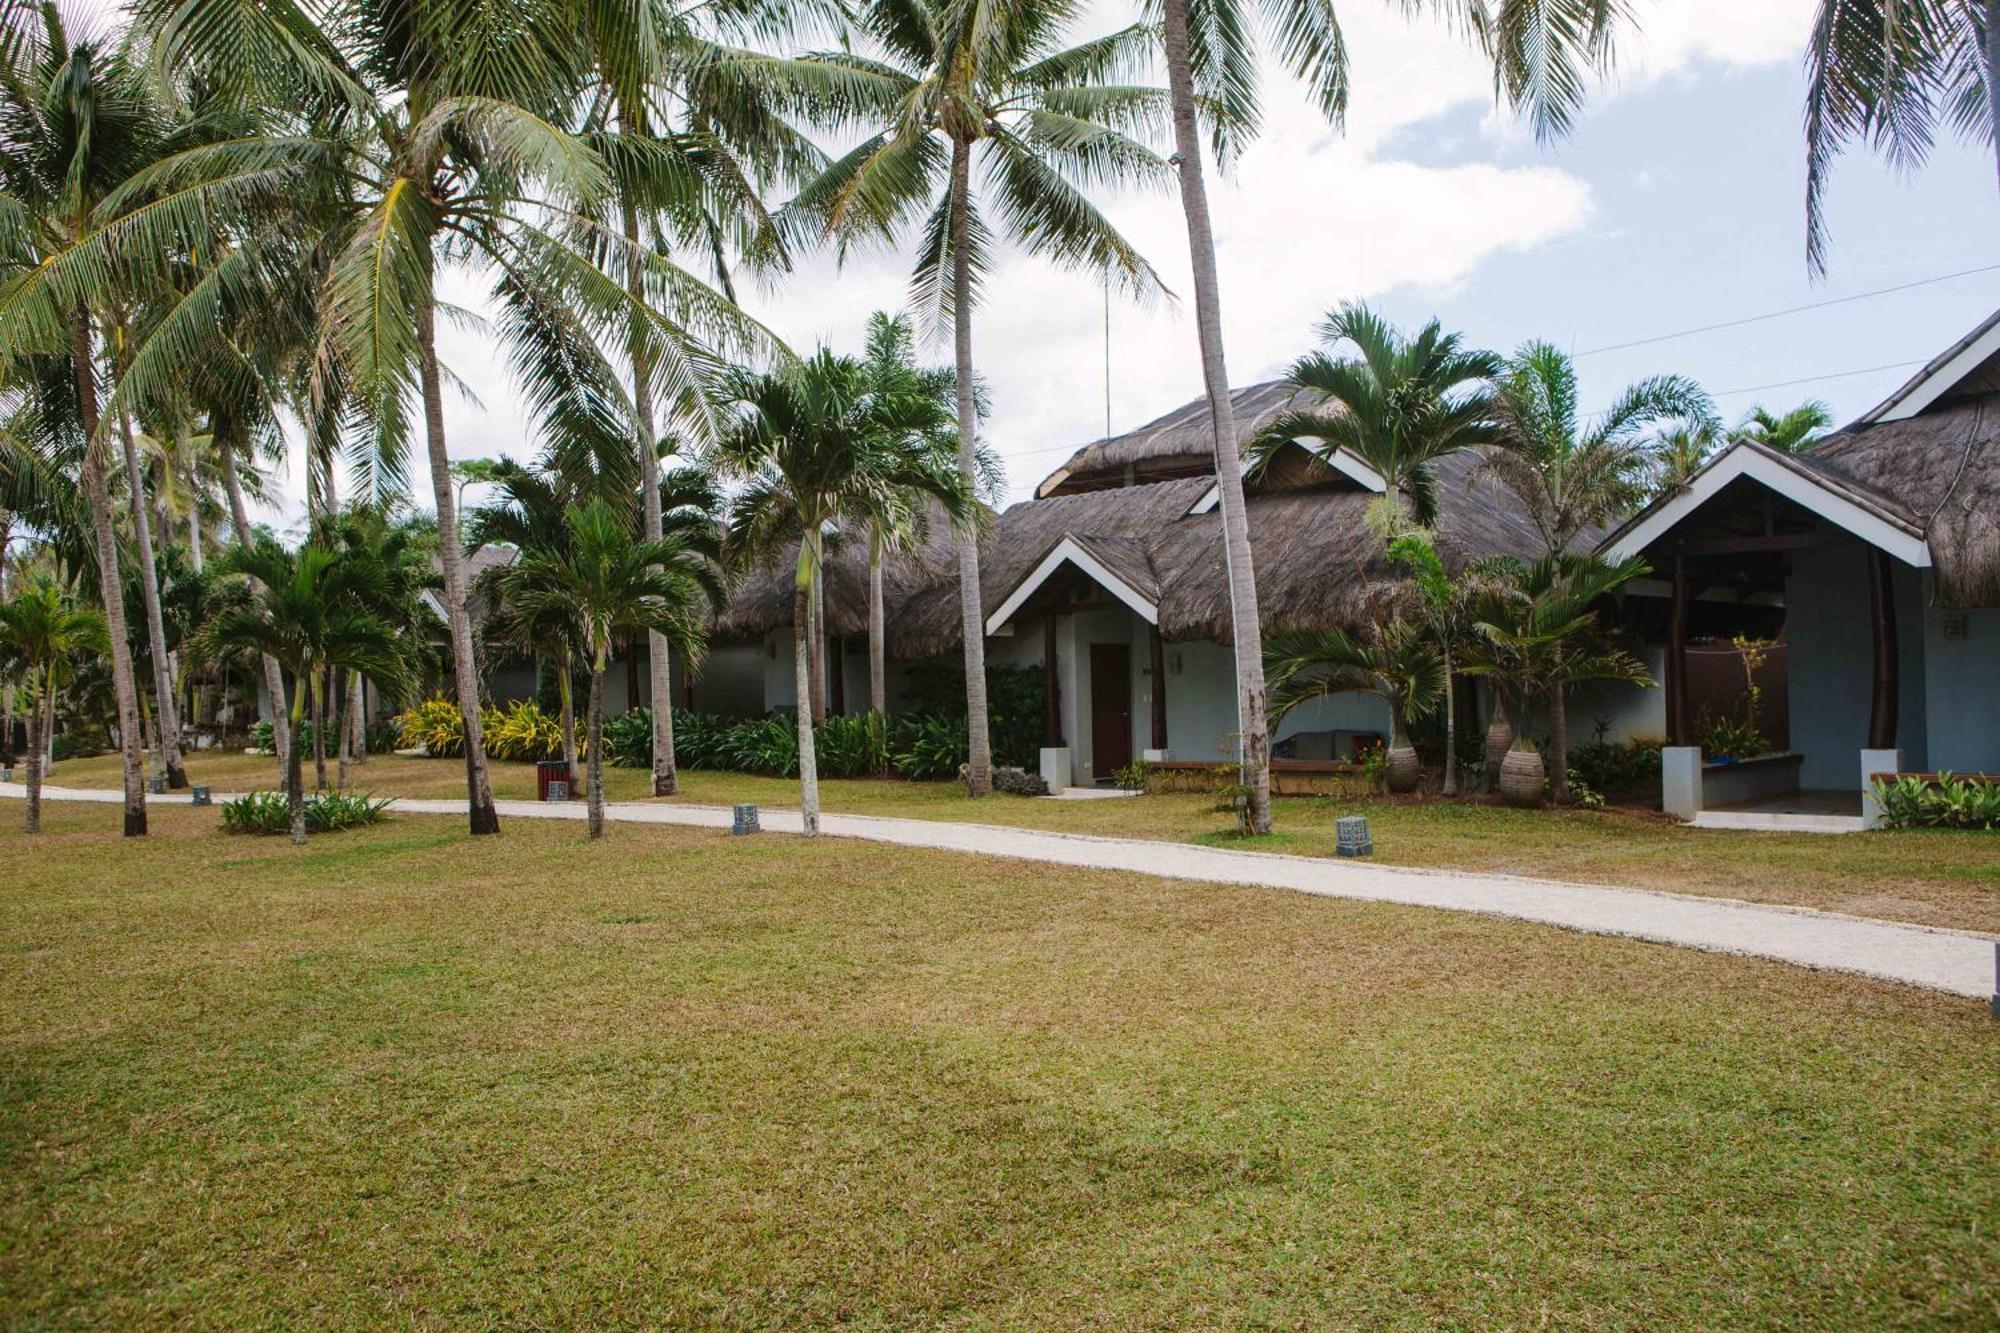 Mangodlong Paradise Beach Resort Himensulan Kültér fotó